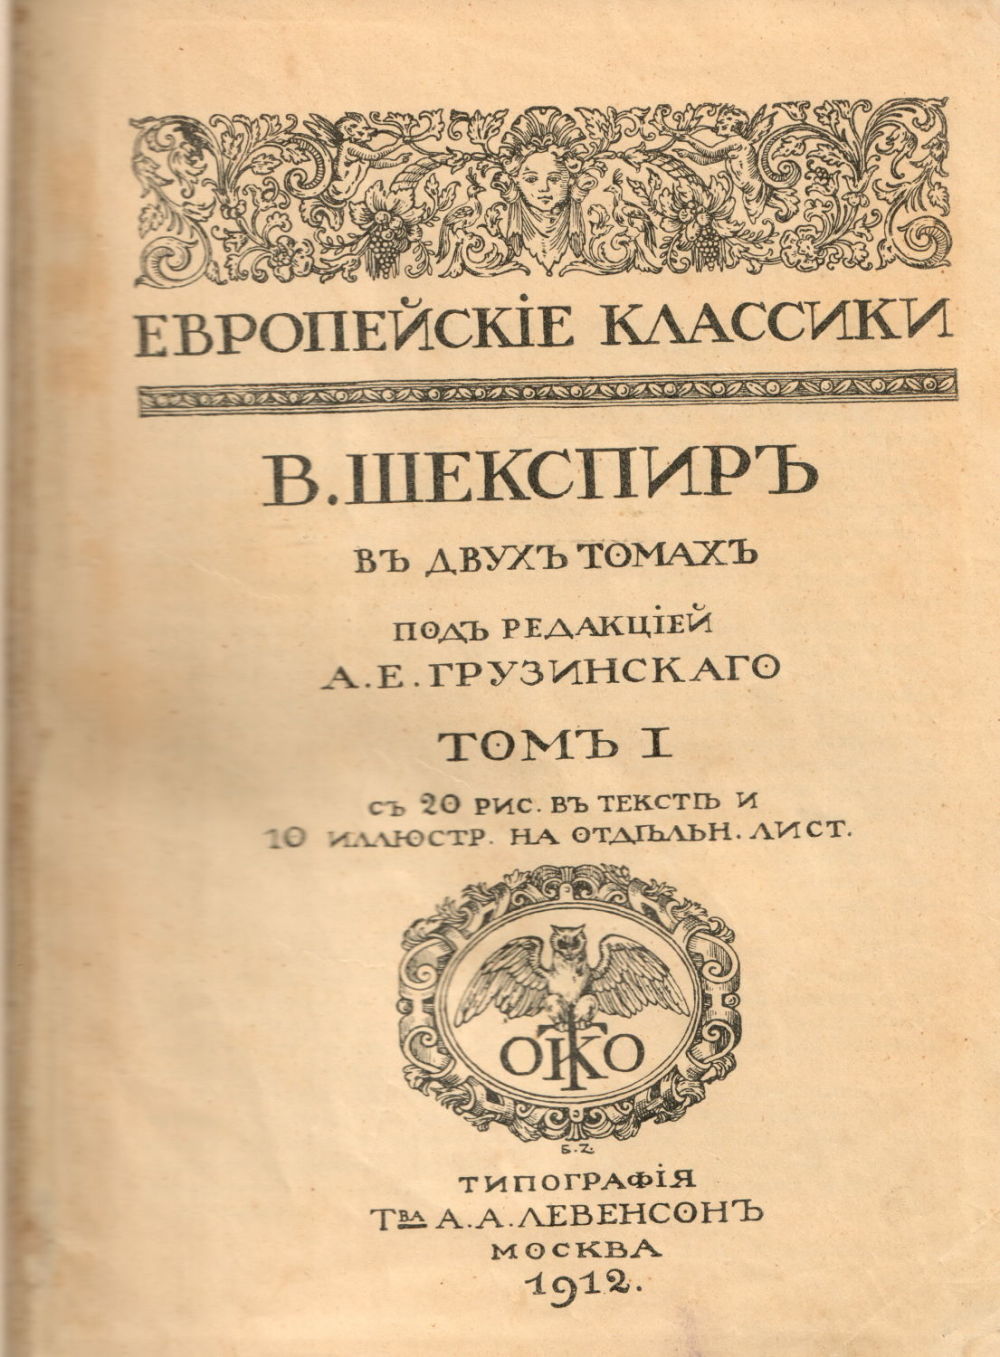 V.SHekspir. Sochineniya.3 t.t. Moscow, Levinson. 1912/V.SHekspir. Works. 3 Volumes. Moscow, Levinson. 1912 - landofmagazines.com